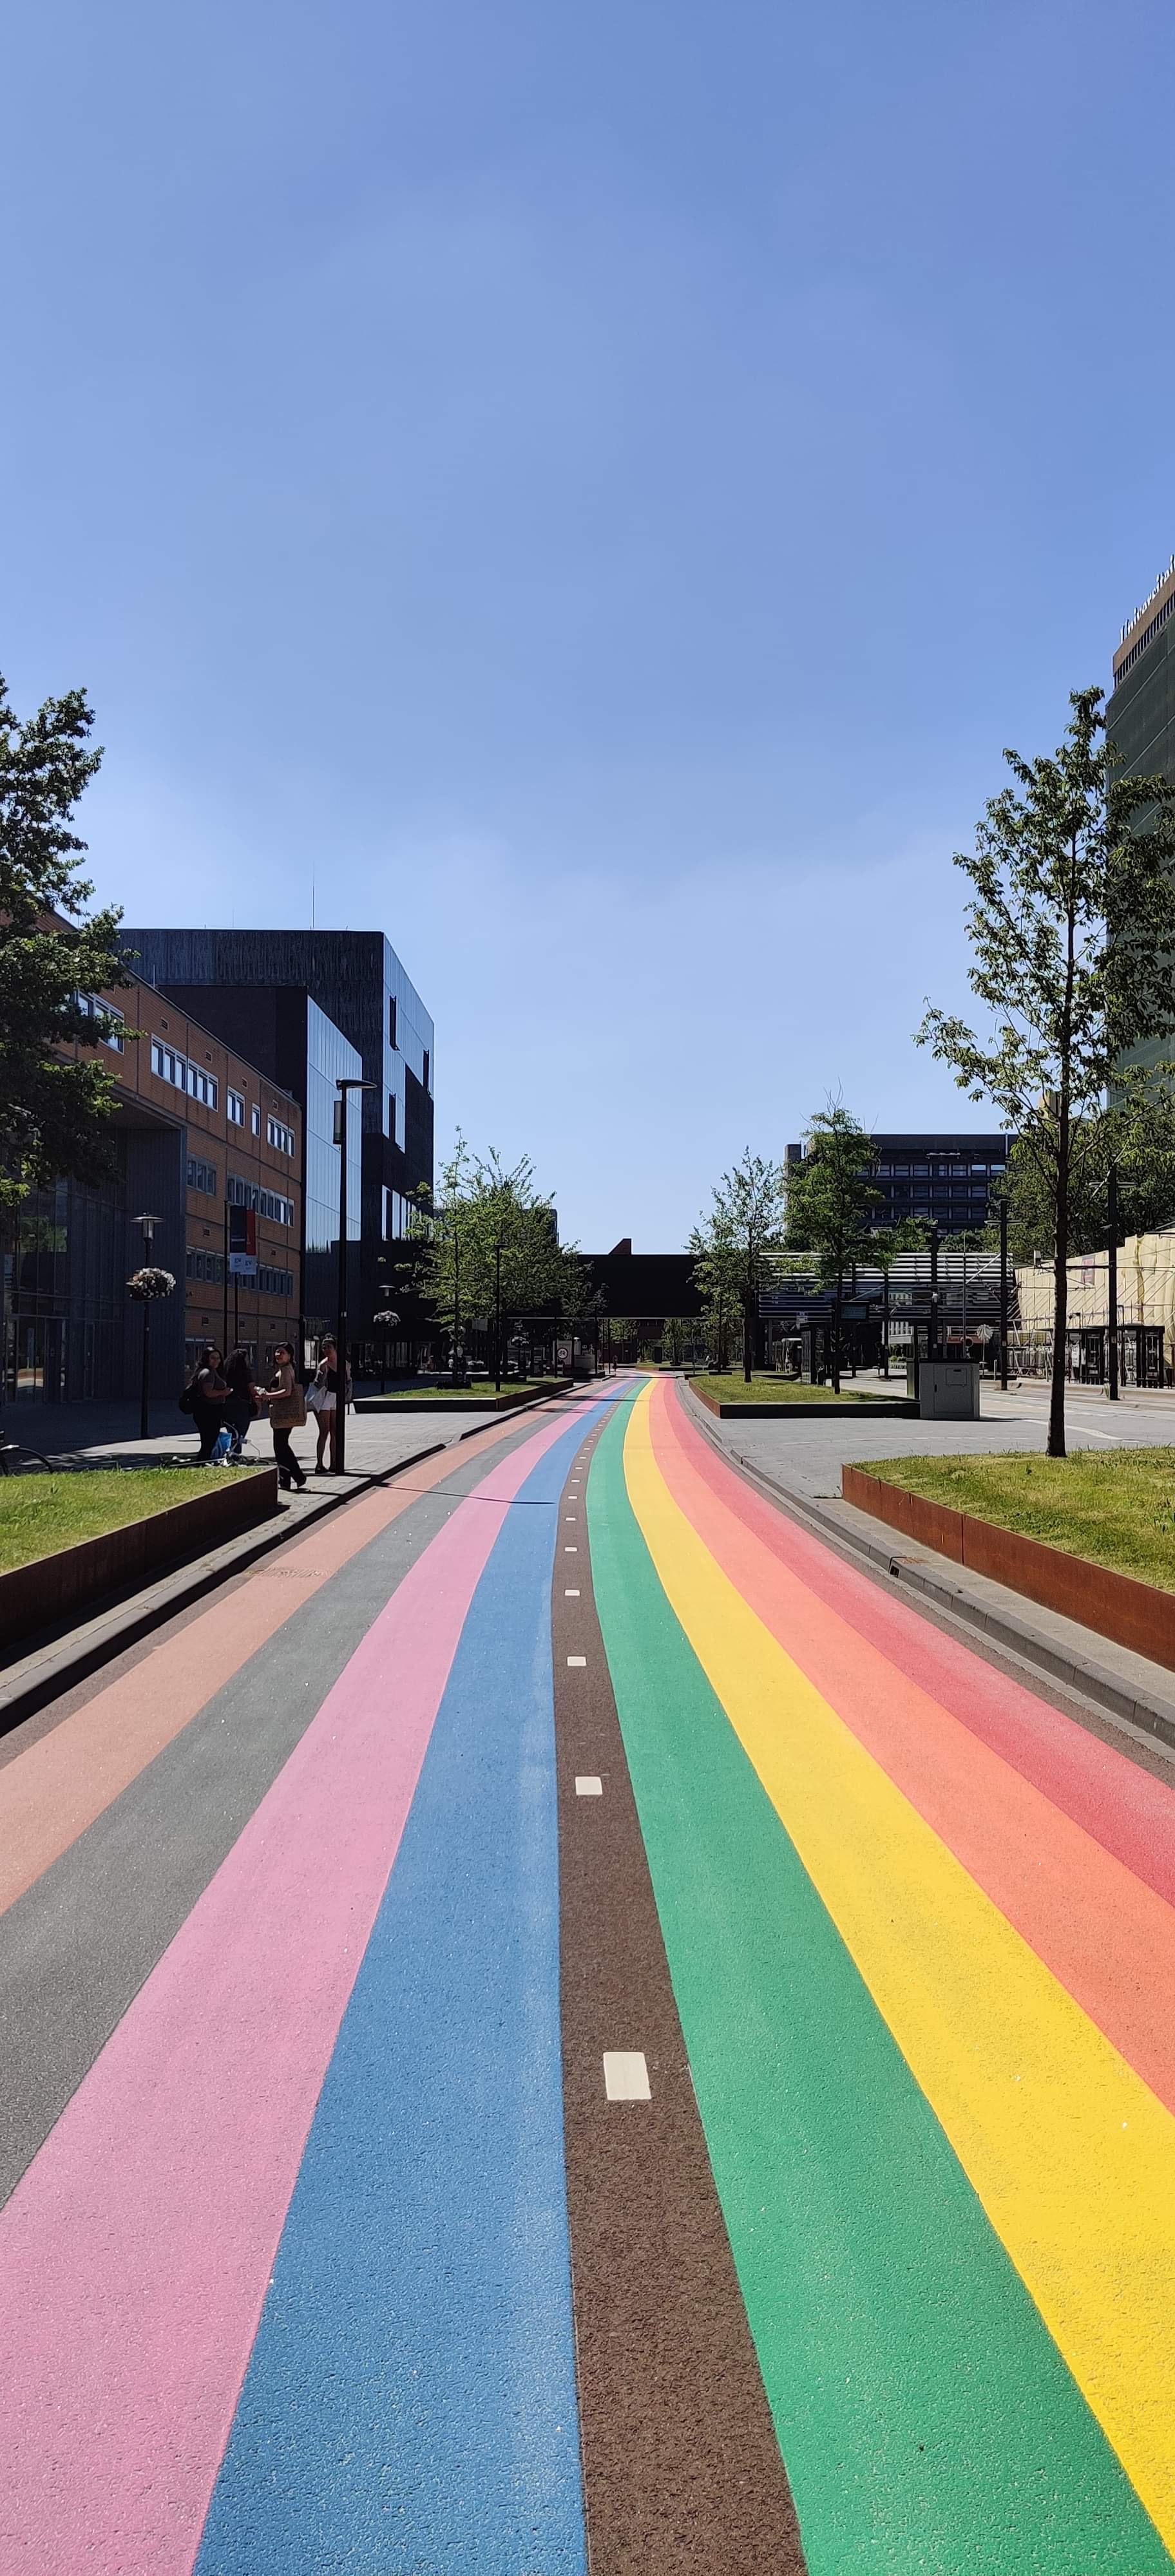 La Universidad de Ciencias Aplicadas de Utrecht, la Universidad de Utrecht y el UMC de Utrecht han unido sus fuerzas para la realización, porque apoyan plenamente el símbolo. Con el carril bici arco iris, las tres instituciones quieren demostrar que todo el mundo es bienvenido a ser quien es.